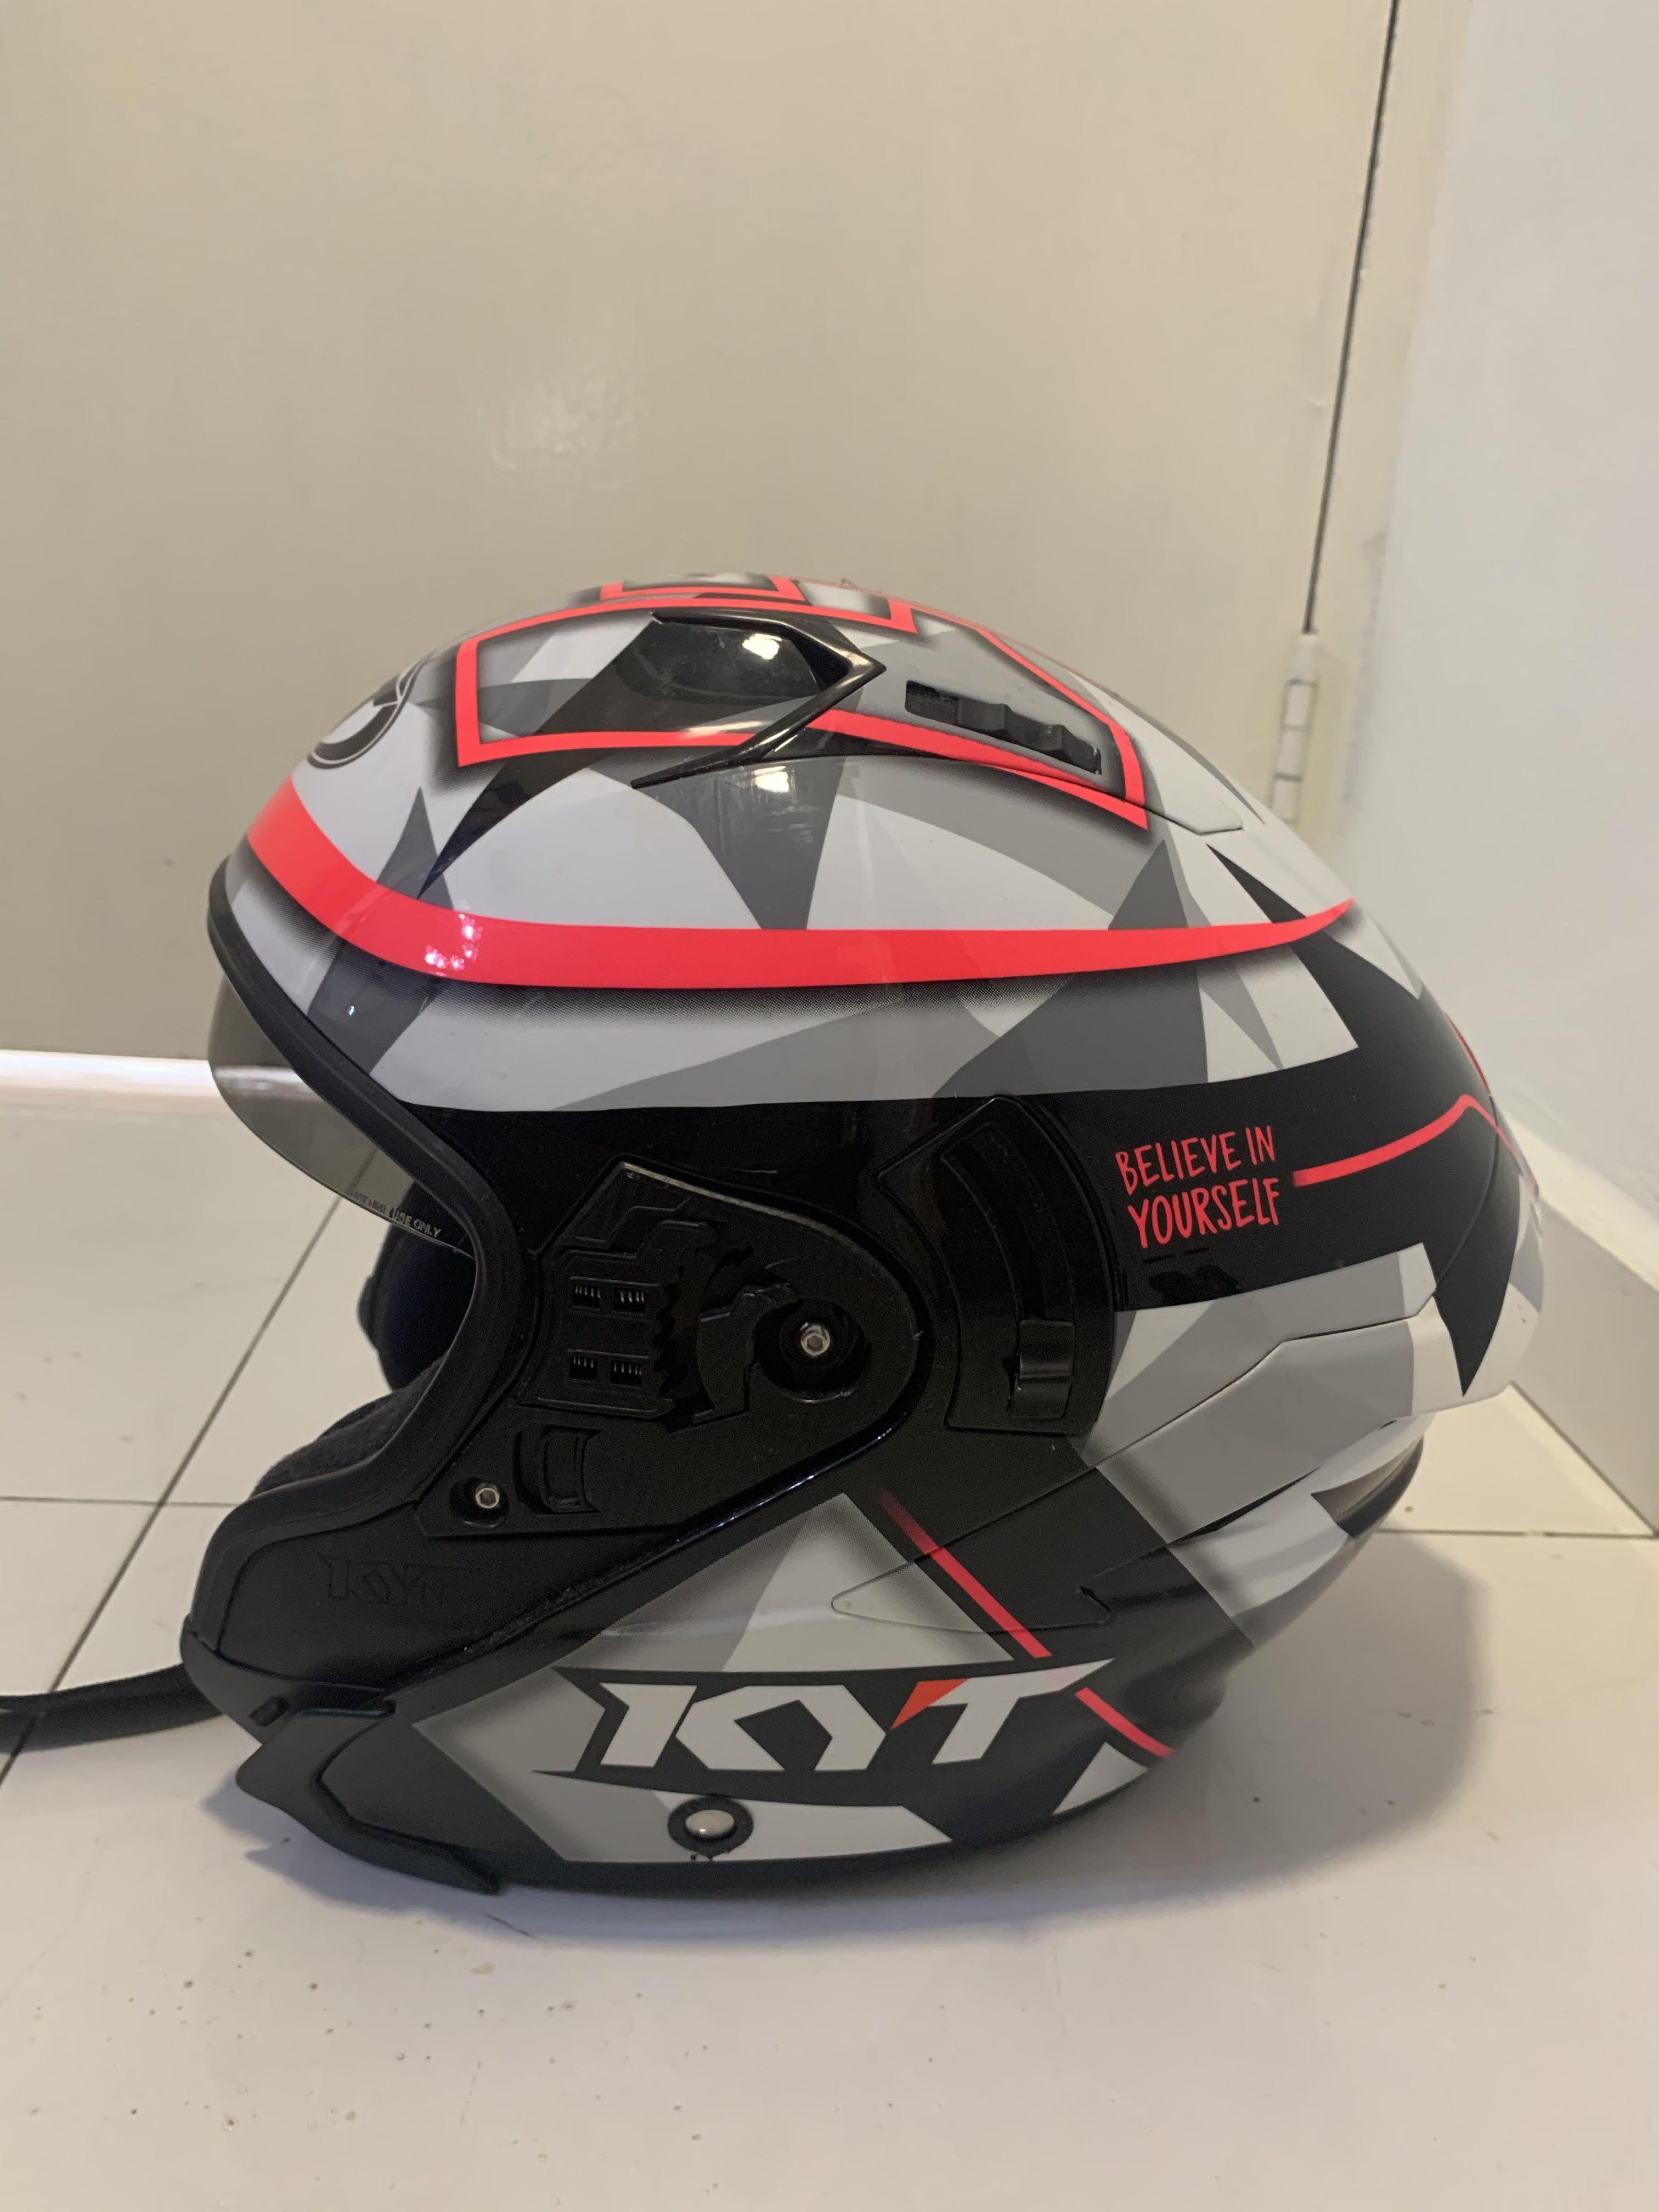 KYT NF-J Helmet in Pink , Motorcycles, Motorcycle Accessories on Carousell